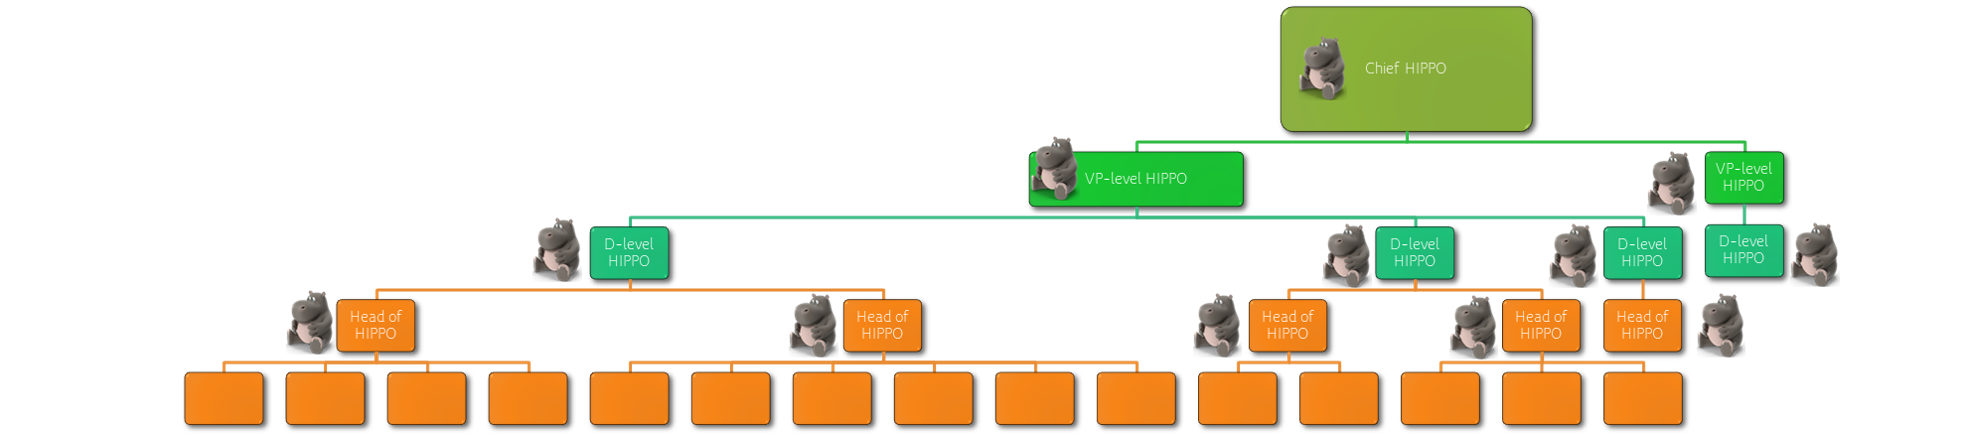 HIPPO hierarchy